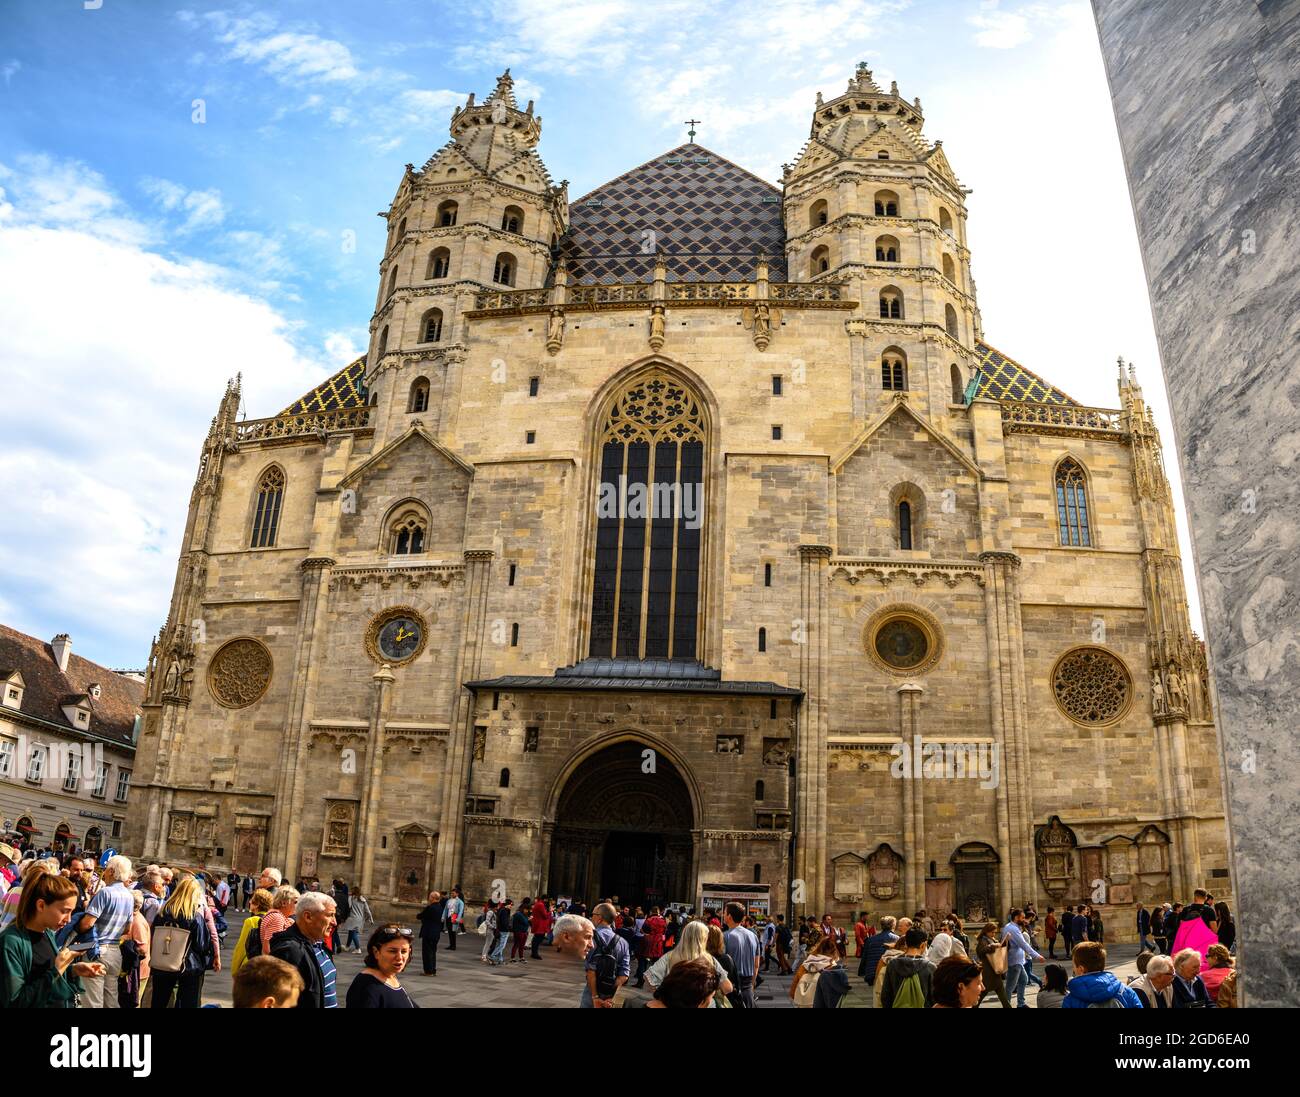 viena Austria - 27 de septiembre de 2019. La catedral de St Stephens está situada en la famosa Stephansplatz, en el centro de Viena. Foto de stock